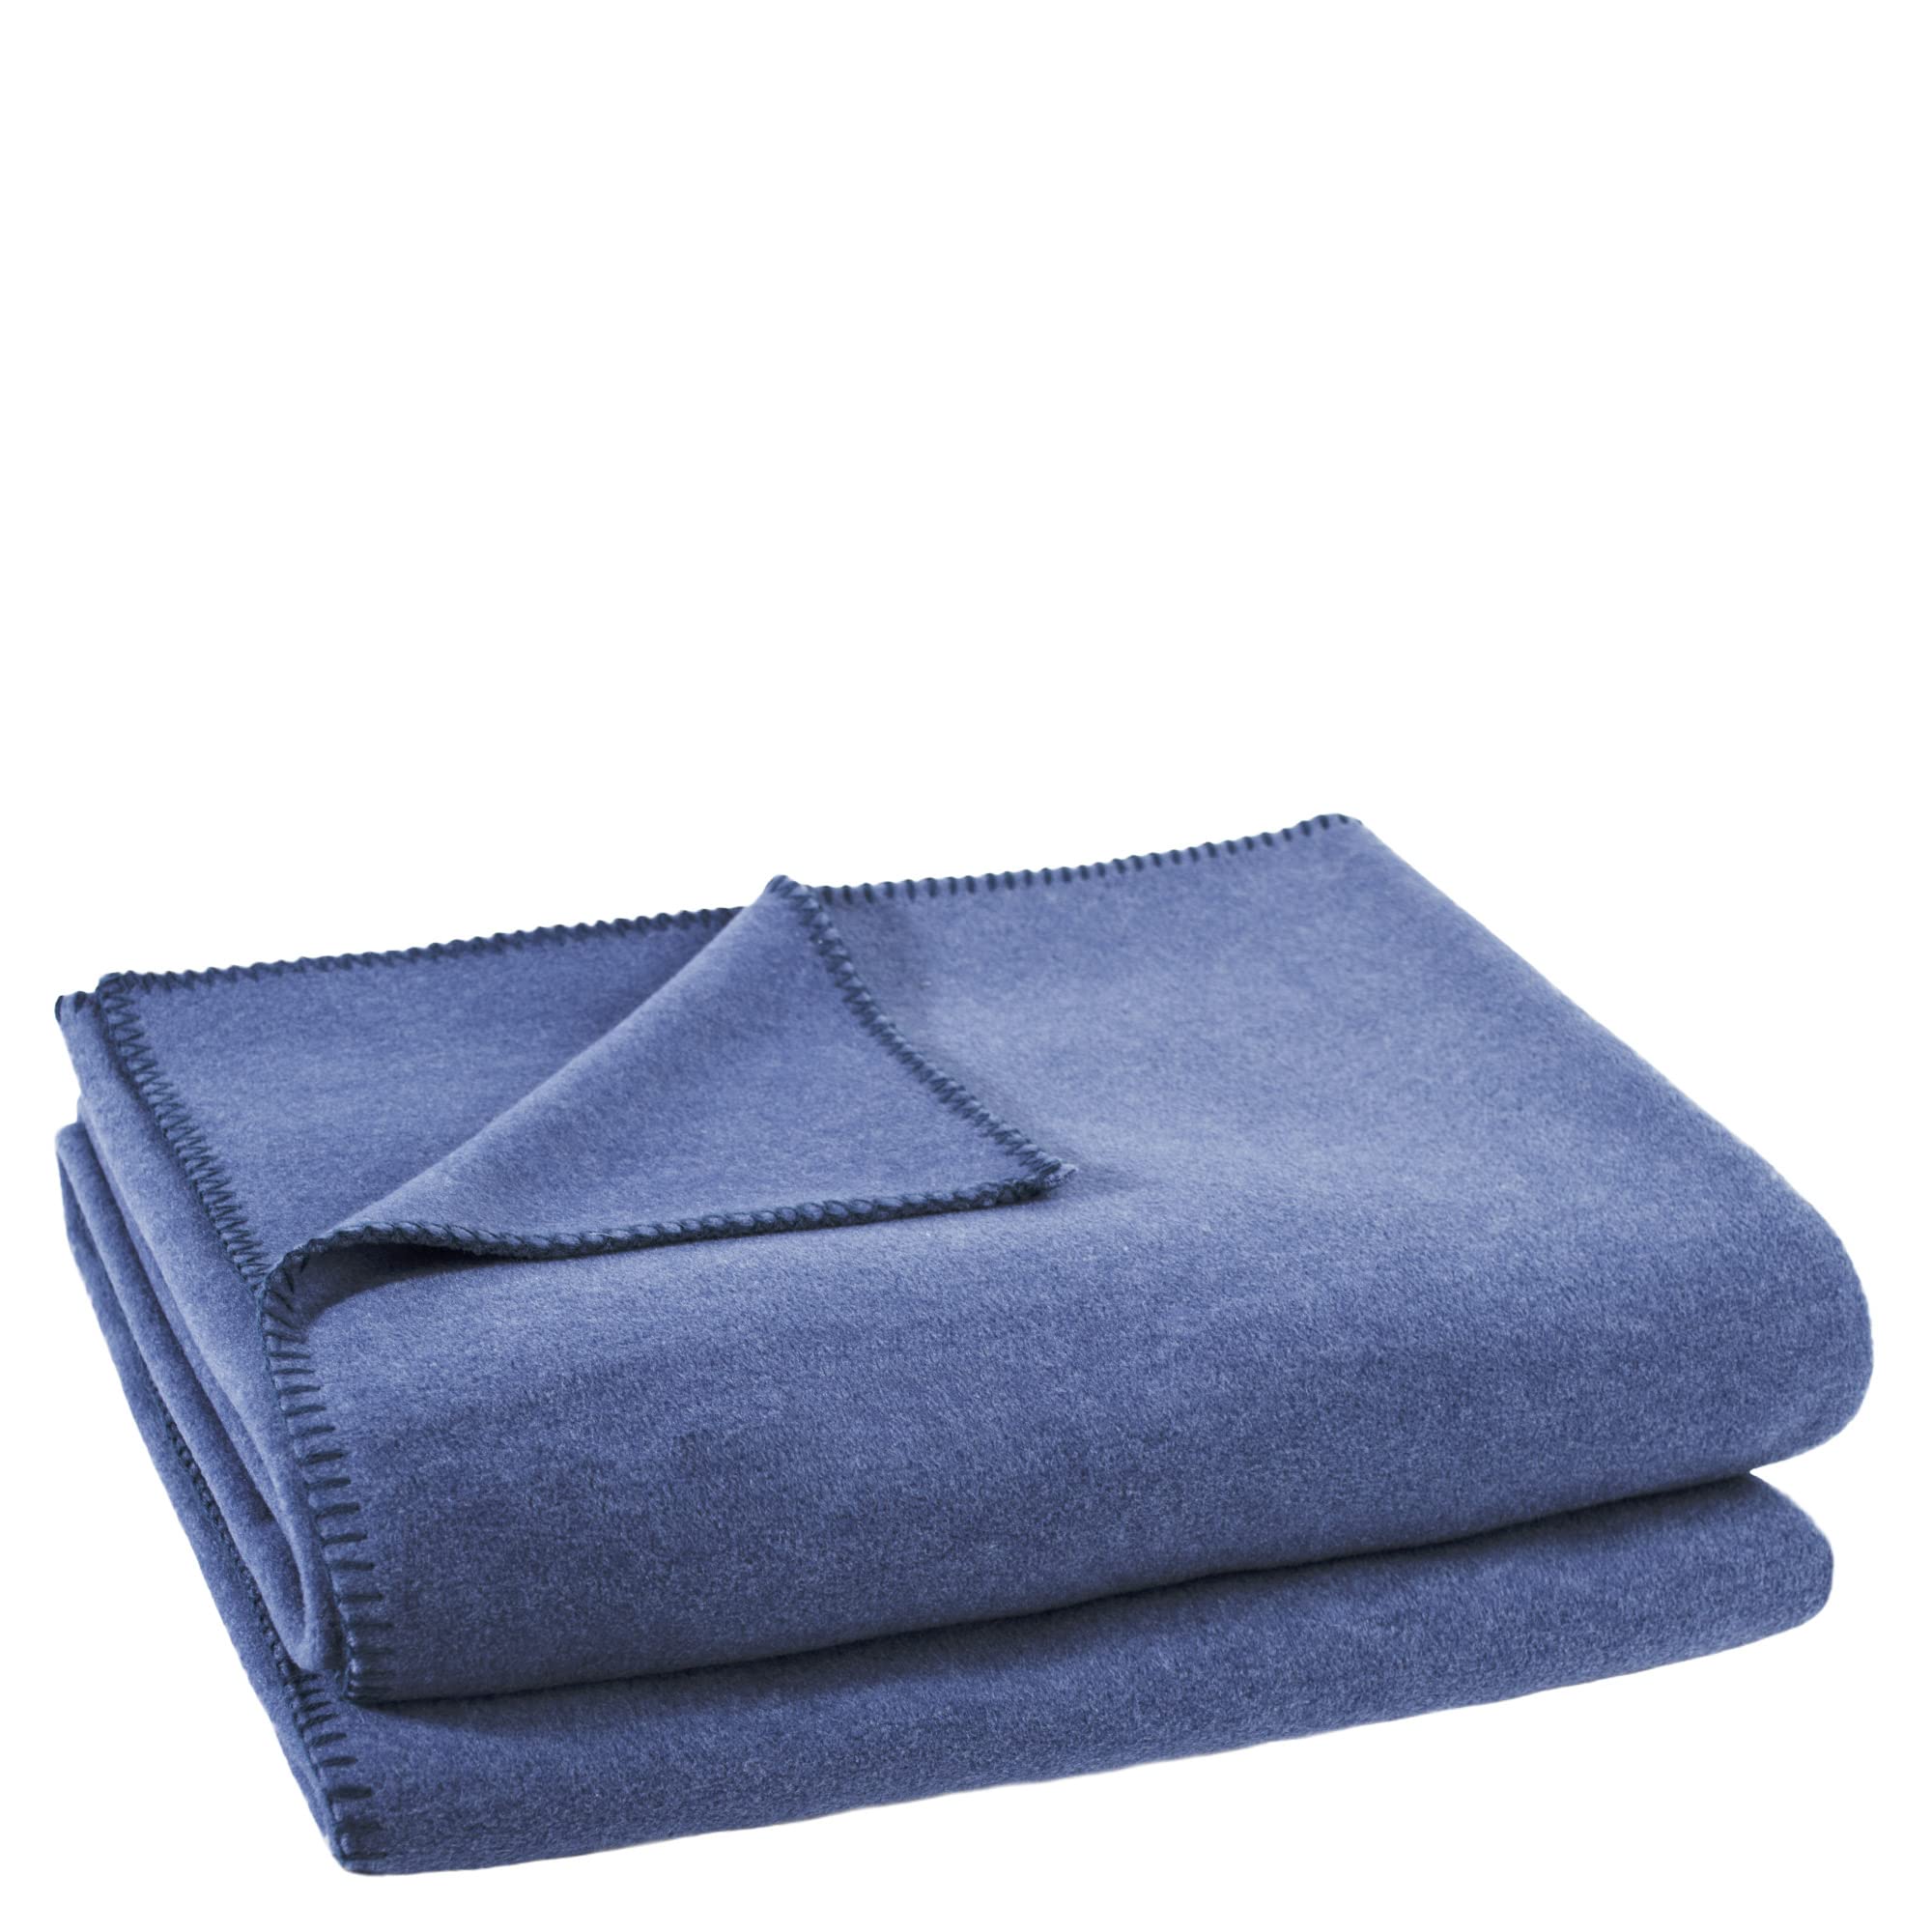 Soft-Fleece-Decke – Polarfleece-Decke mit Häkelstich – flauschige Kuscheldecke – 180x220 cm – 540 indigo - von 'zoeppritz since 1828', 103291-540-180x220